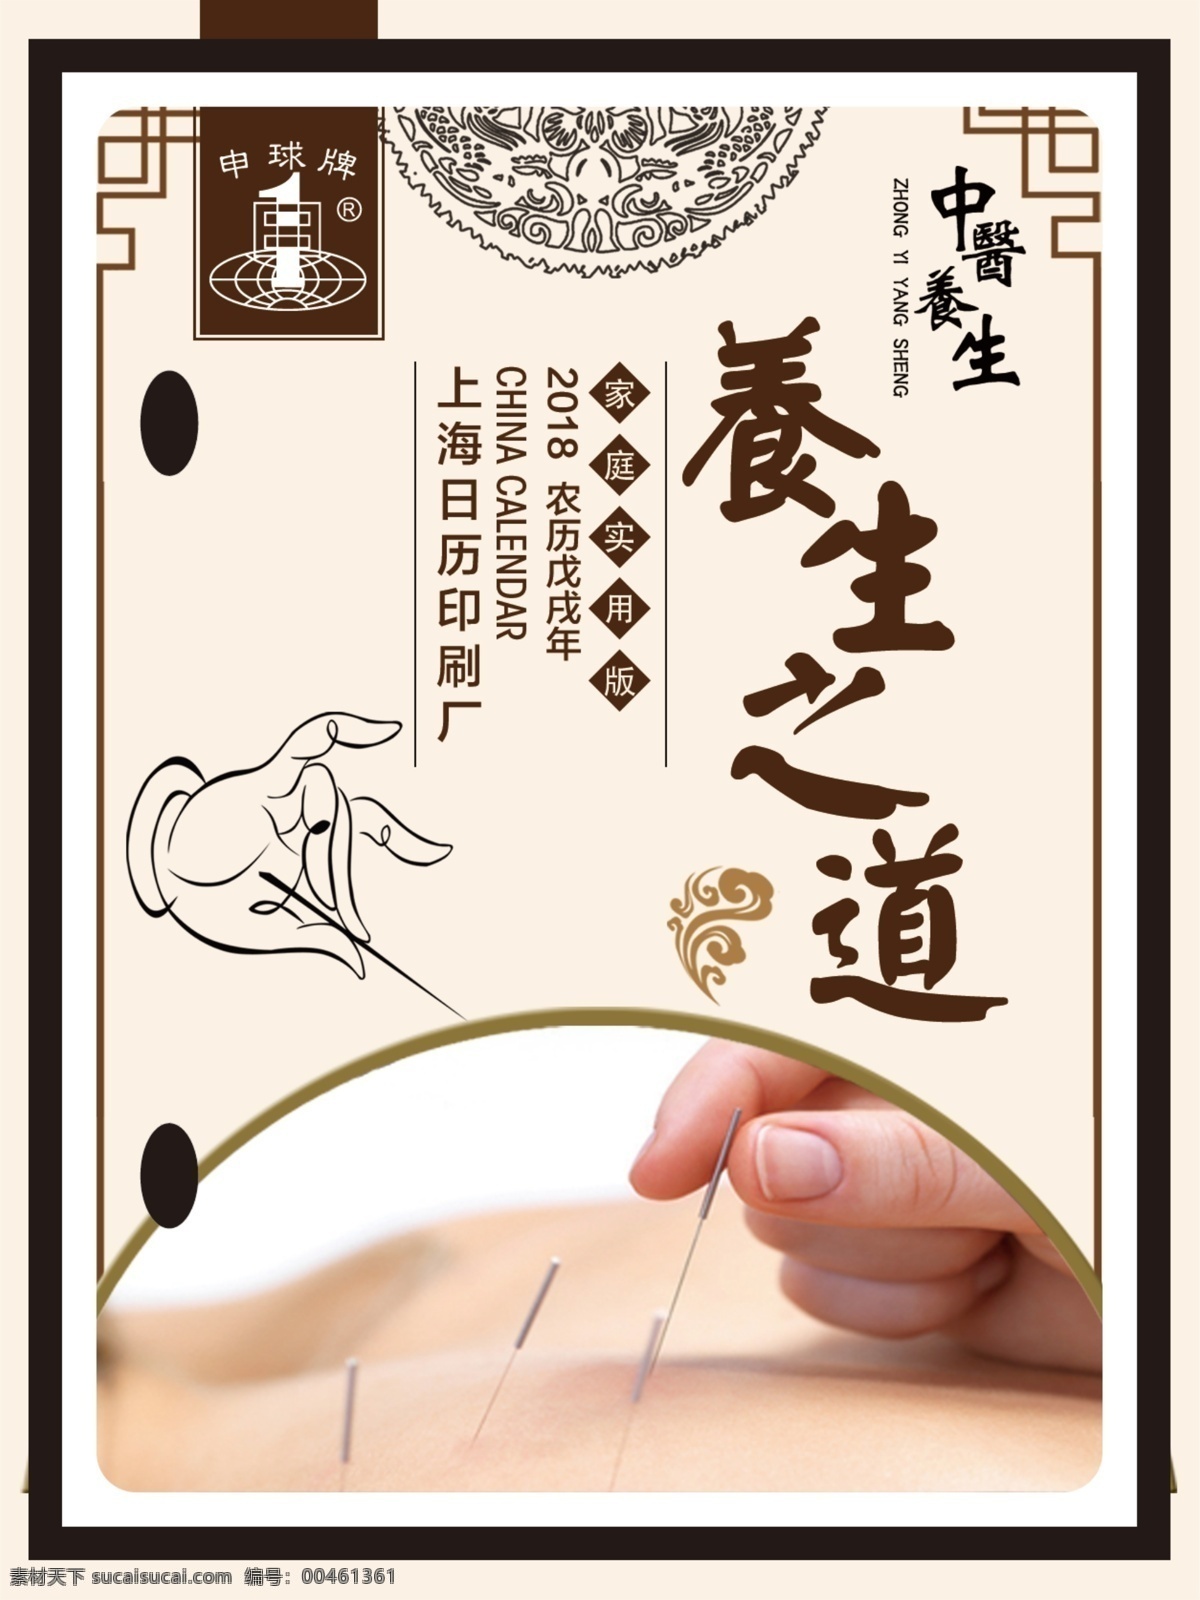 养生之道针灸 养生之道 针灸 中国传统 文化 平面设计 文化艺术